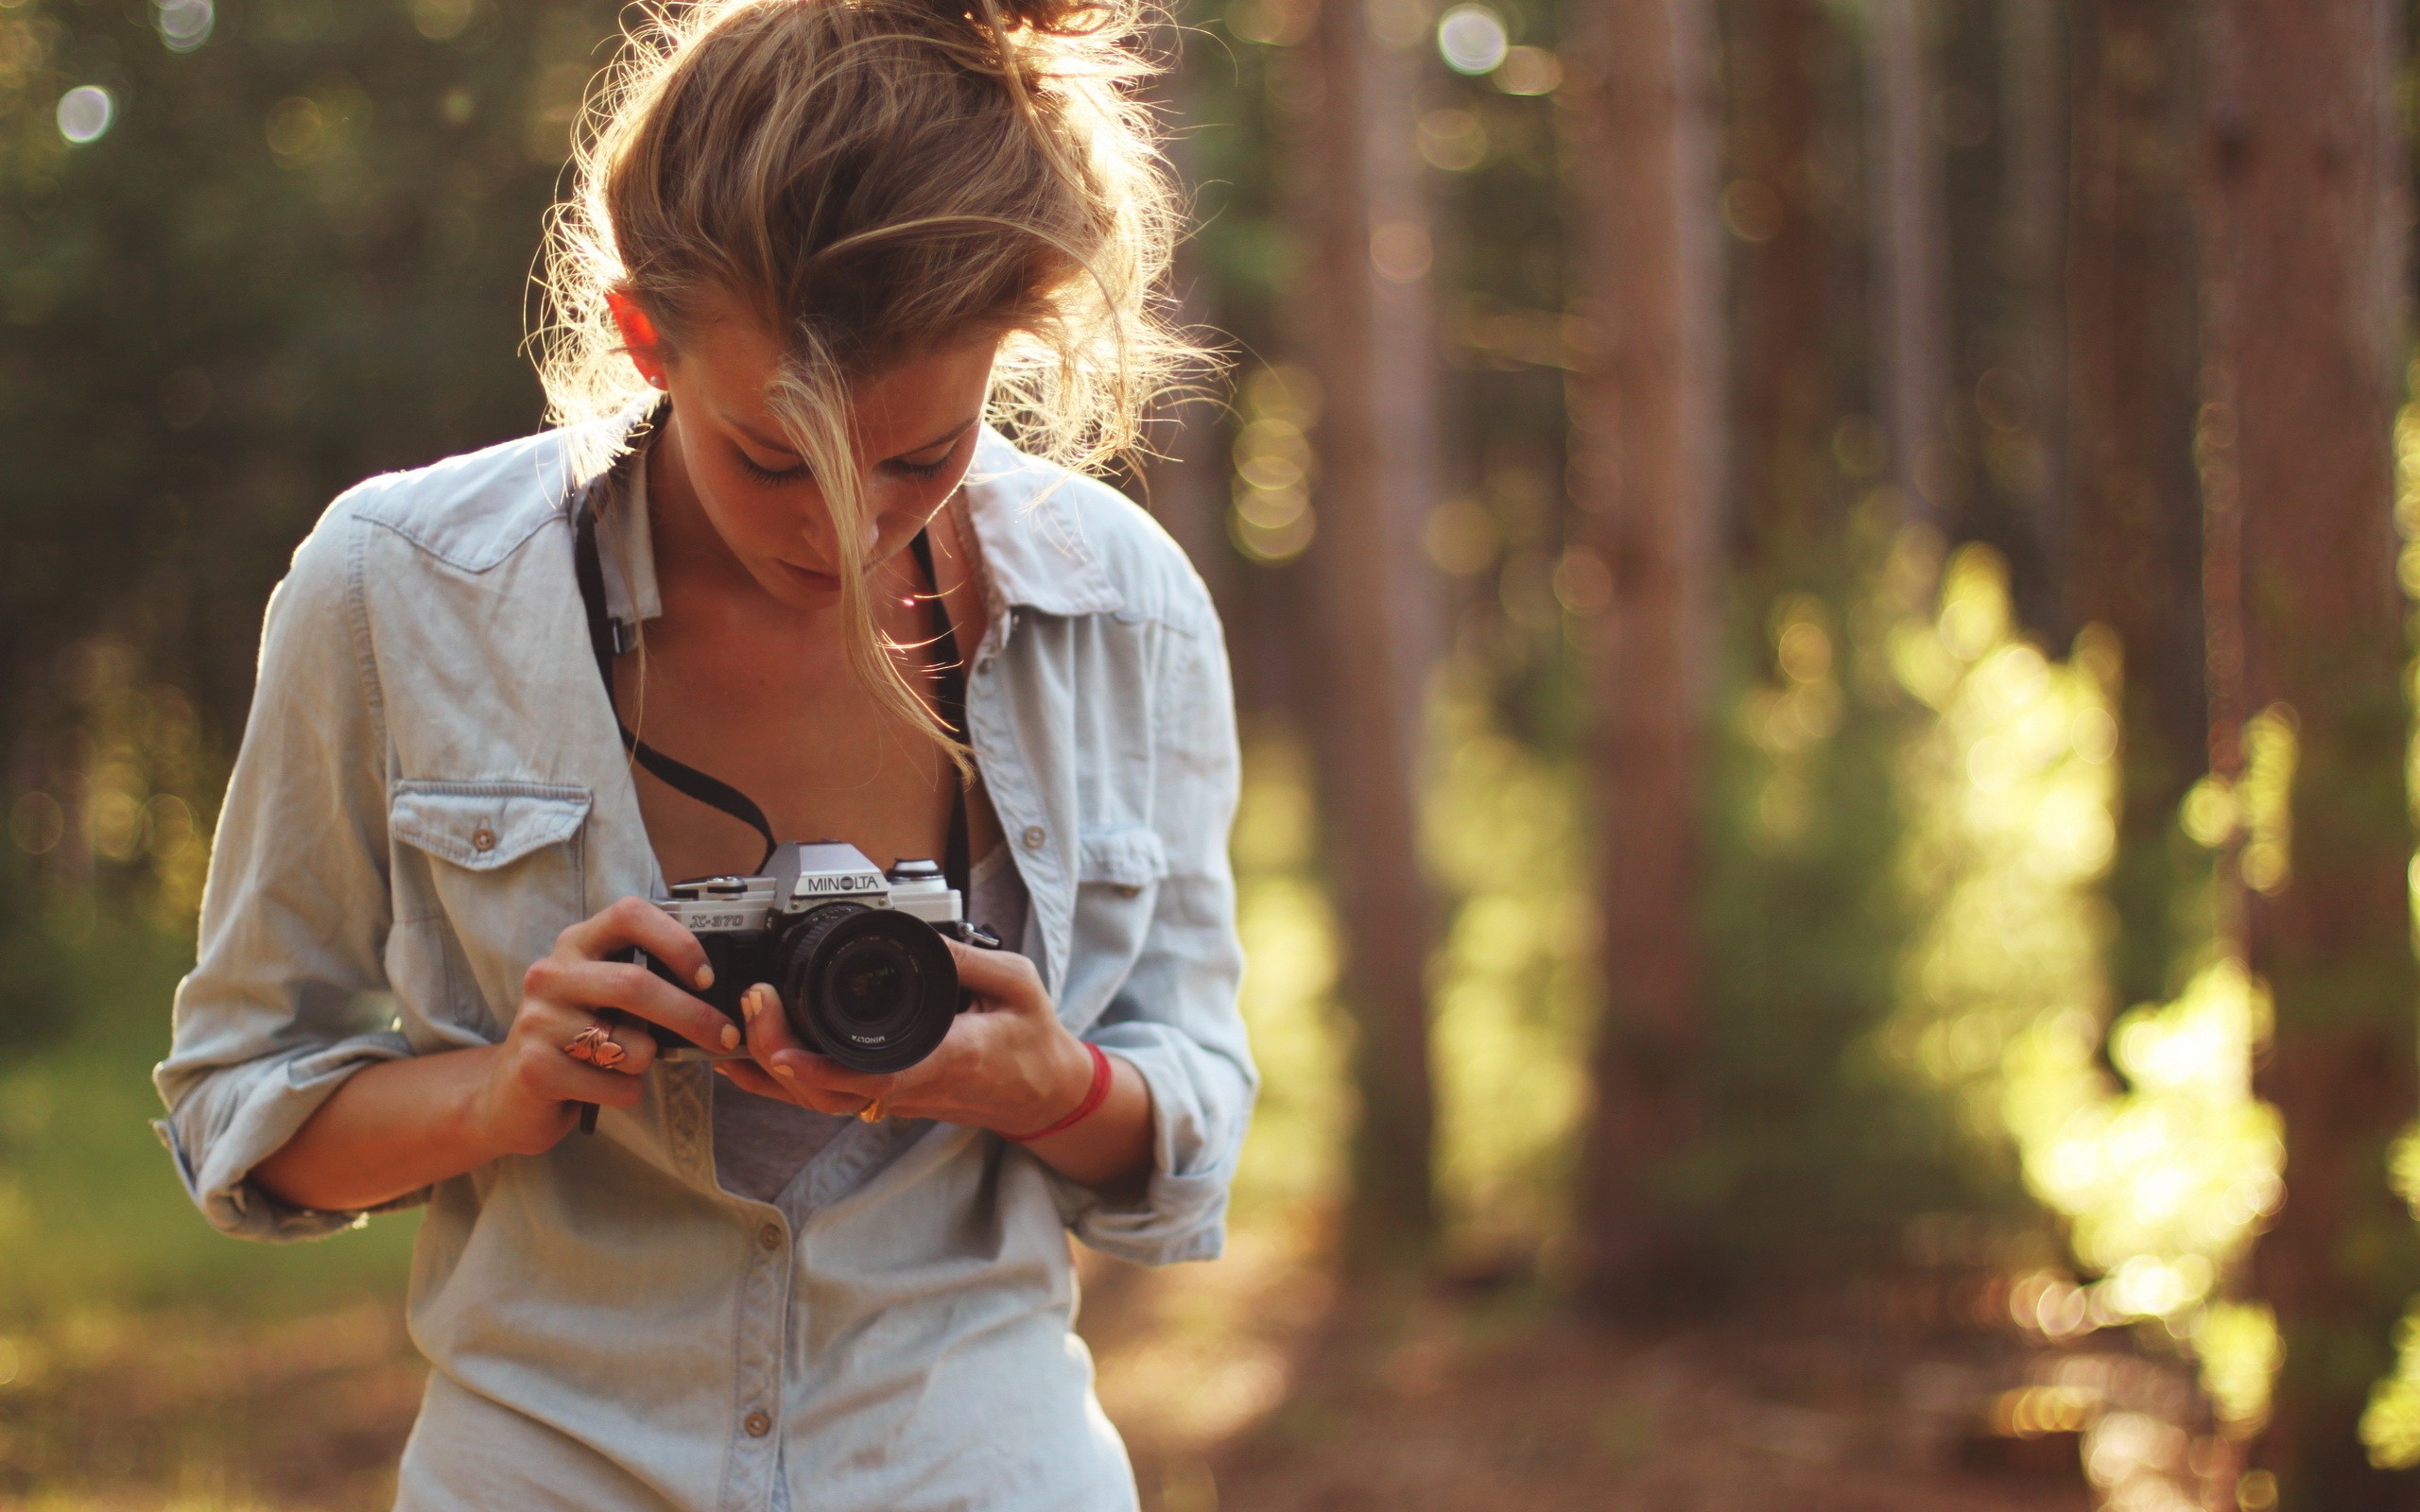 Как делать красивые фотографии на зеркальный фотоаппарат